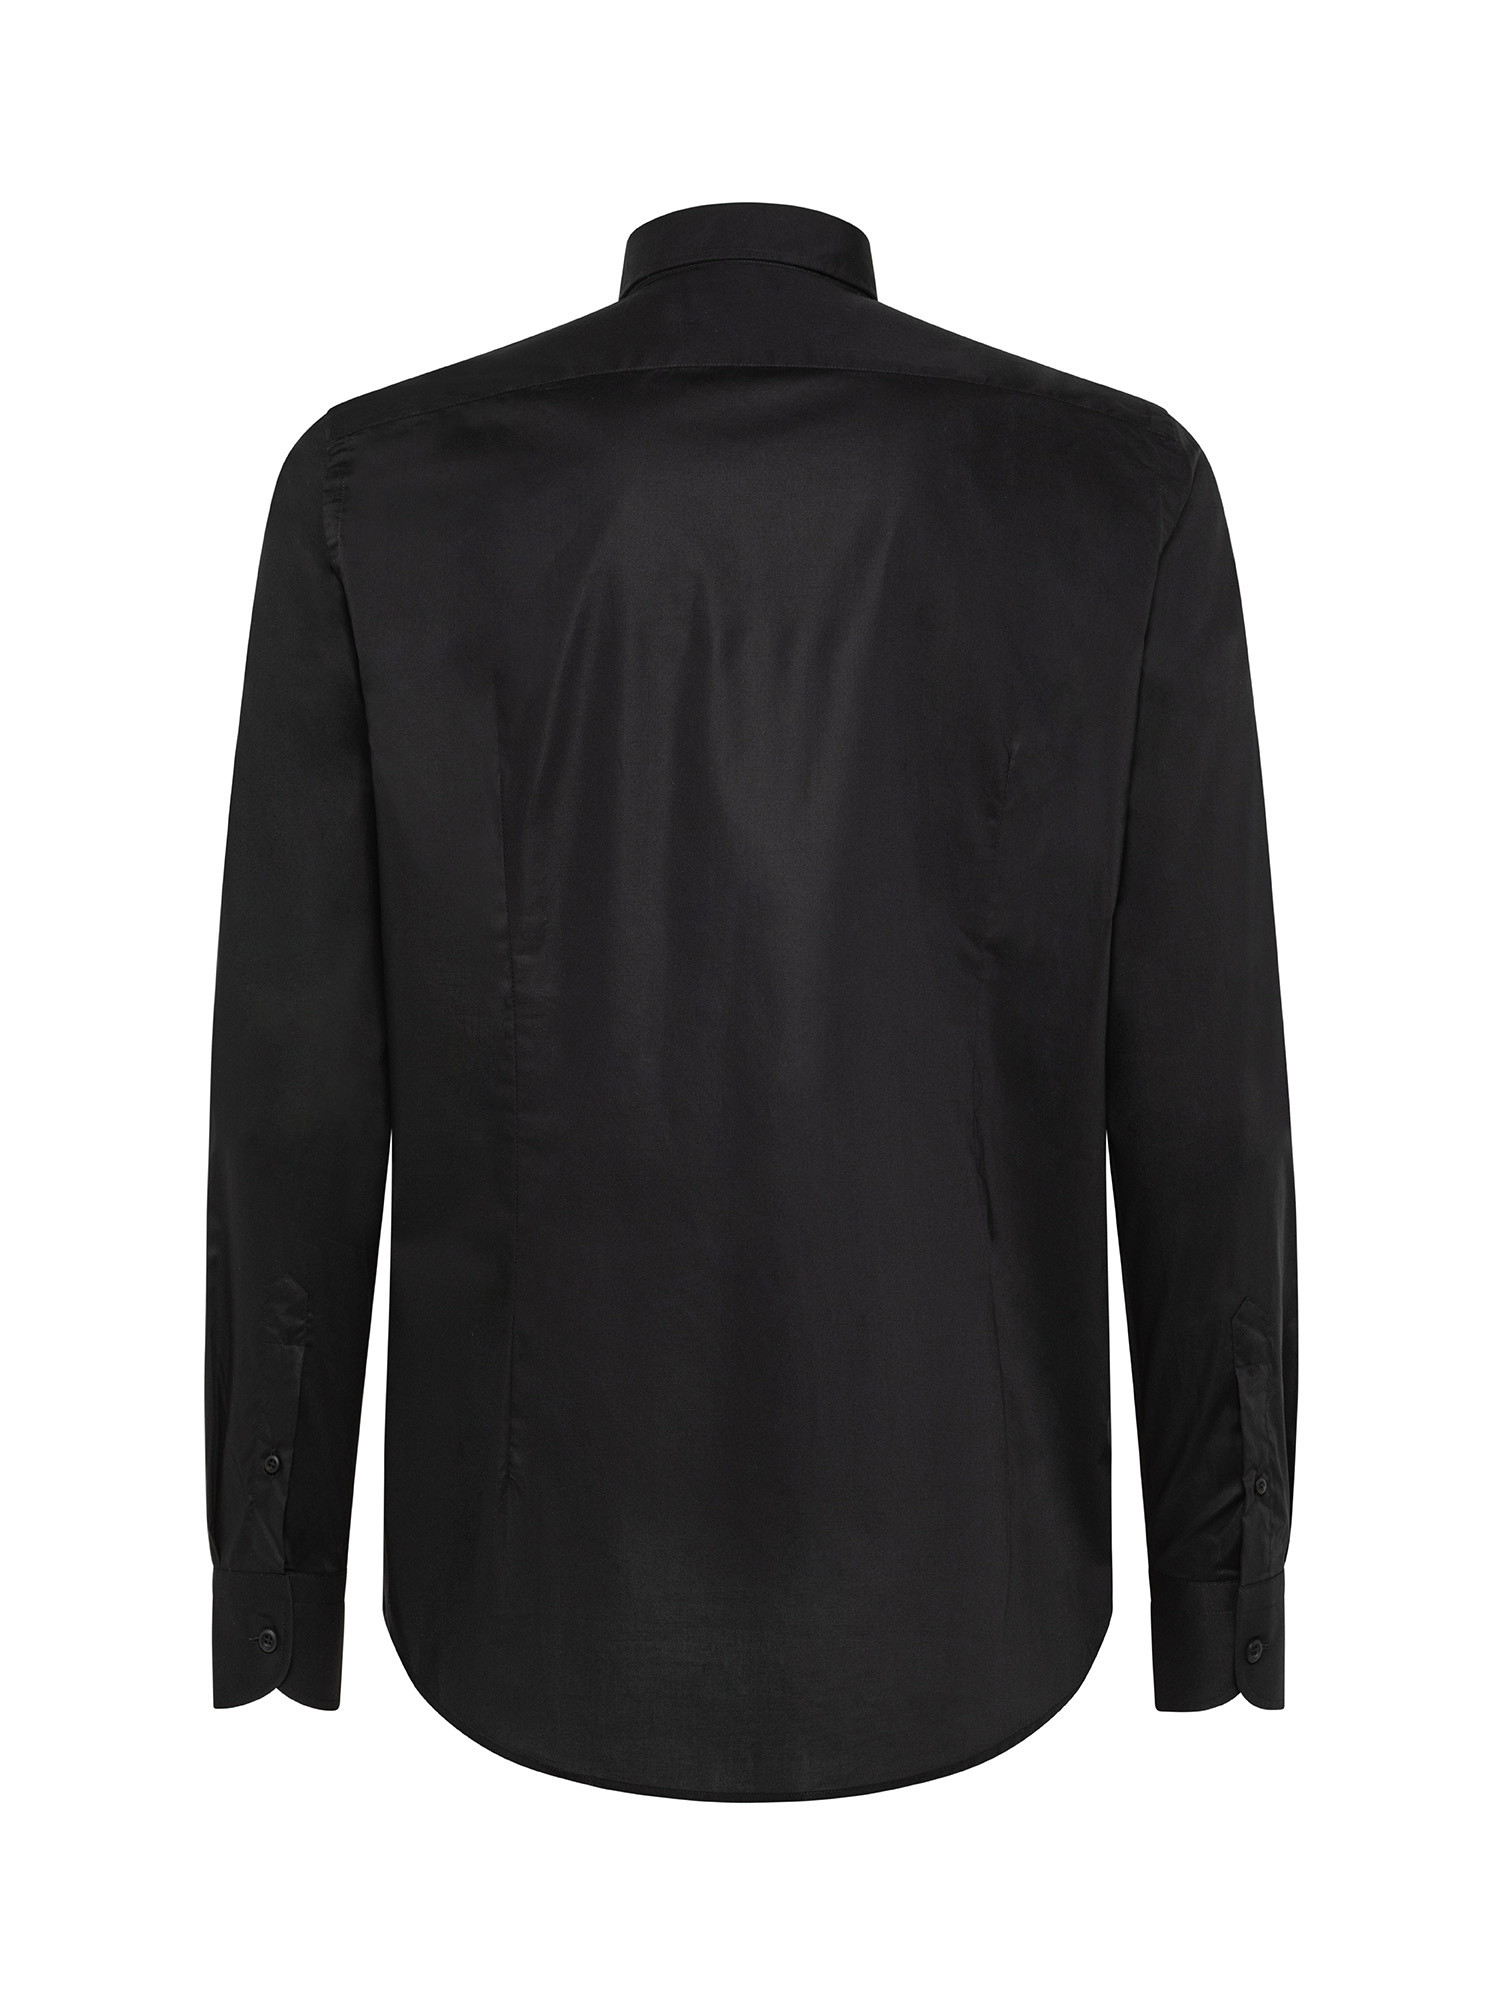 Camicia slim fit in cotone elasticizzato, Nero, large image number 2